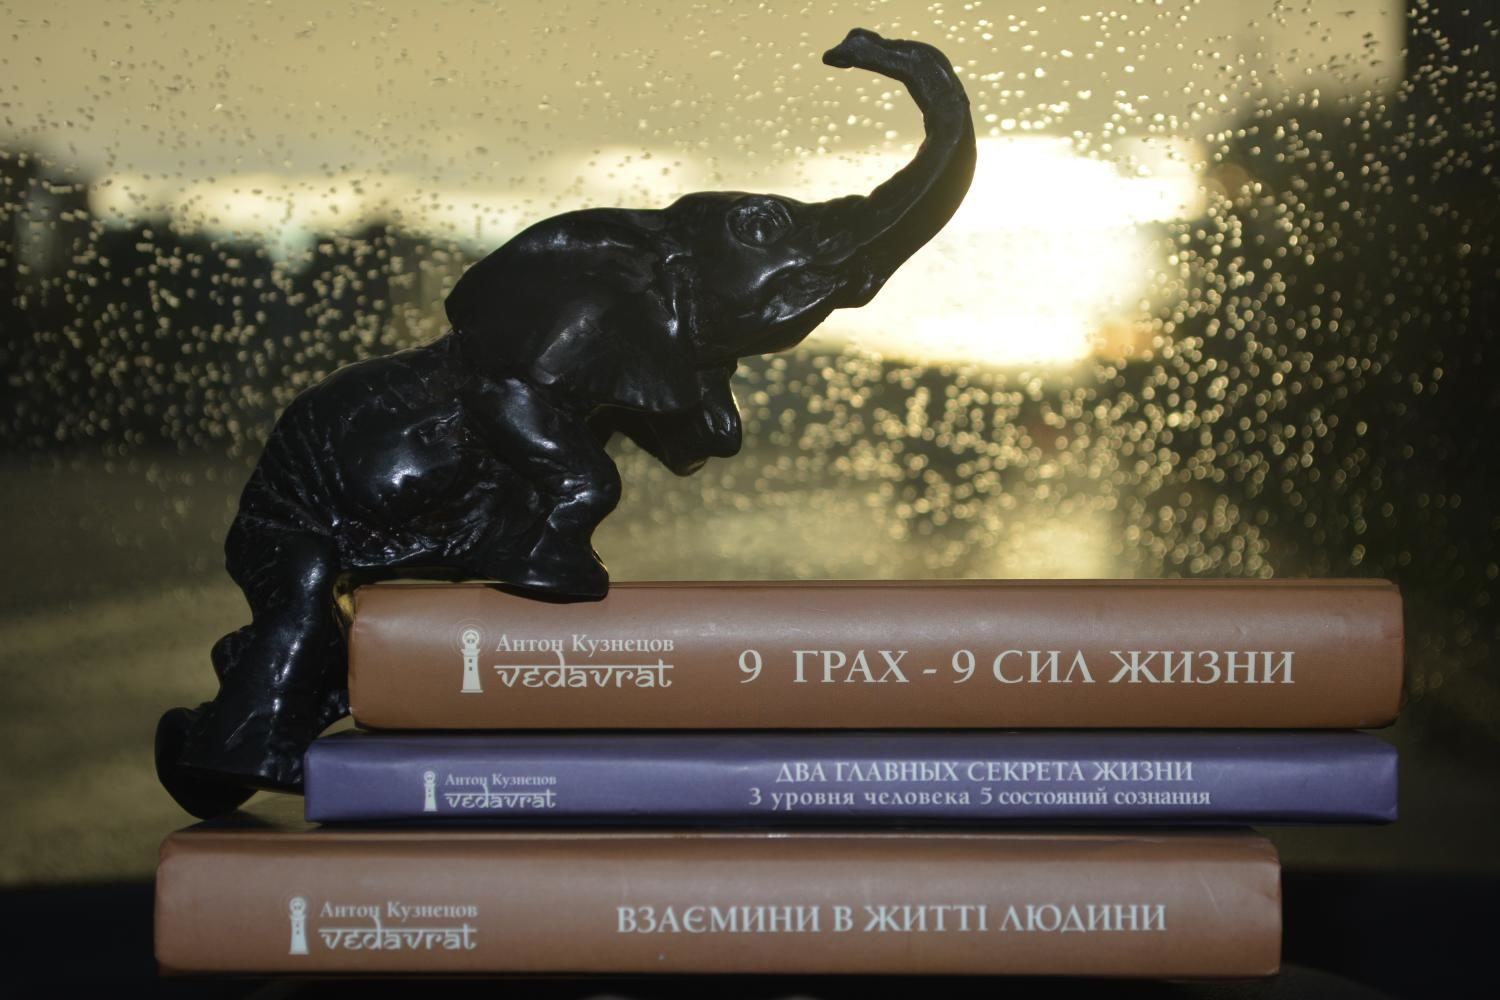 *** Книги Антона Кузнецова - 2*** 